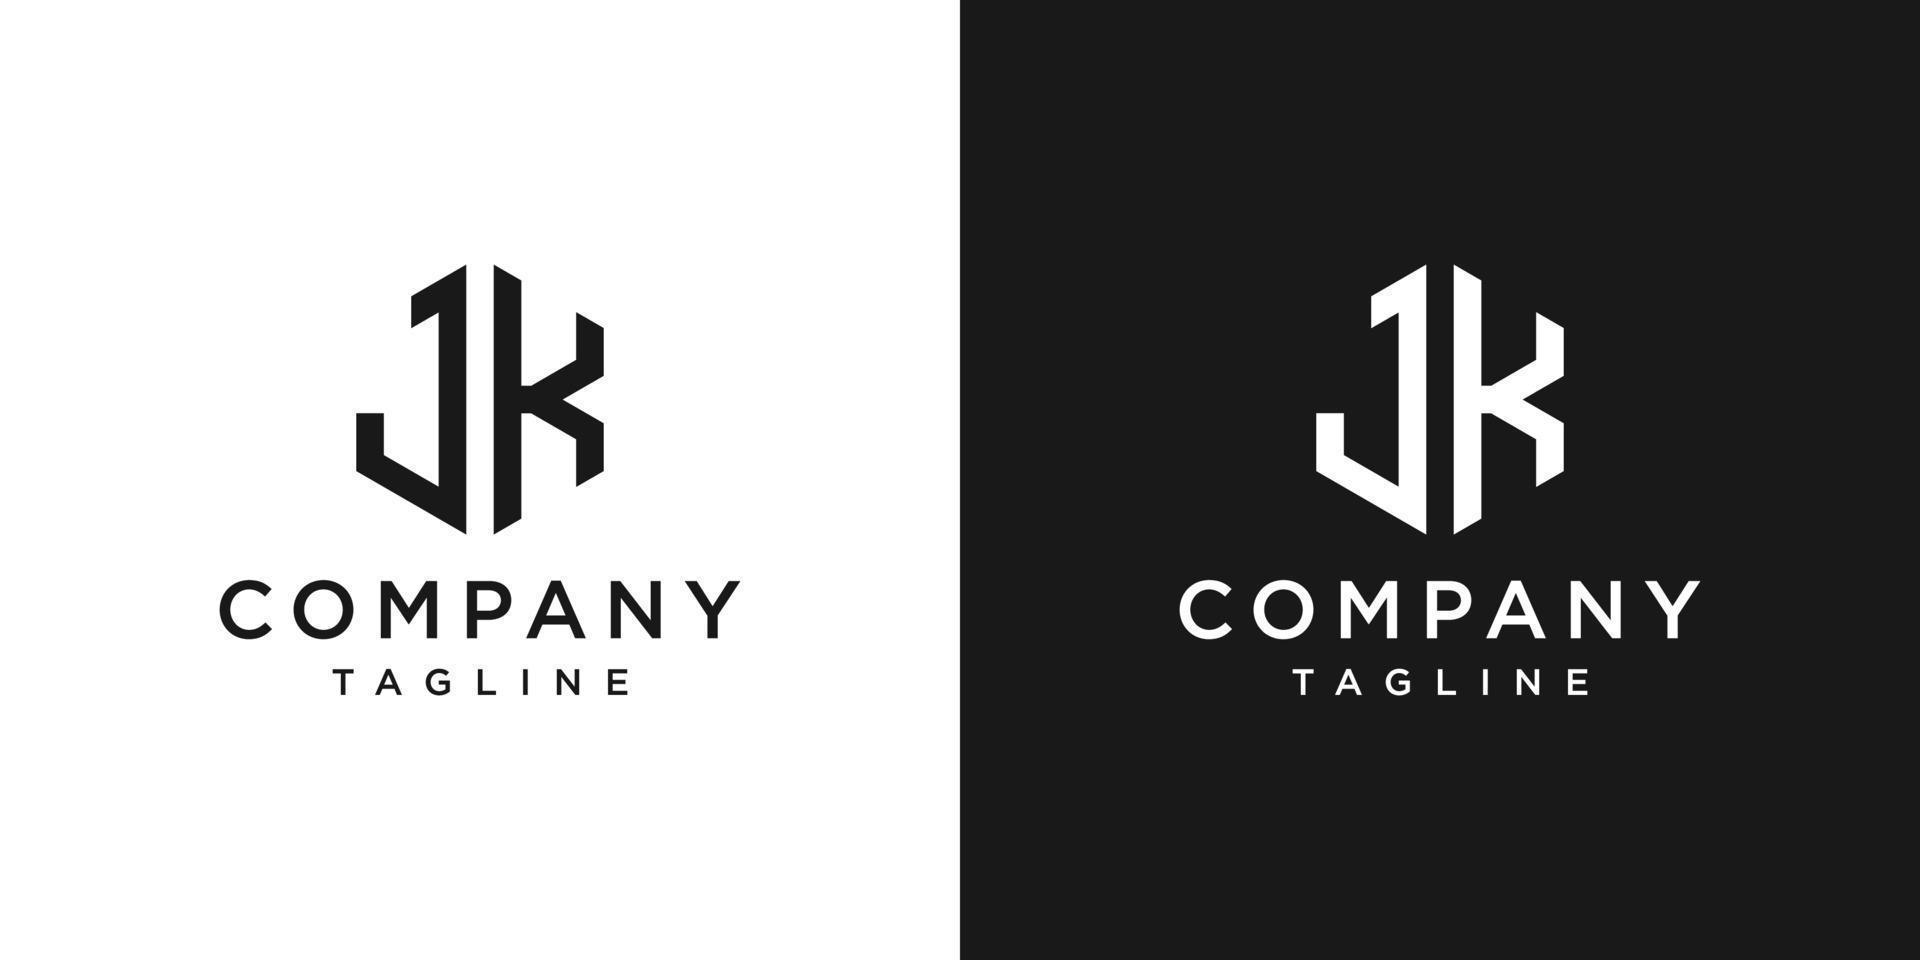 lettera creativa jk monogramma esagono logo design modello icona sfondo bianco e nero vettore